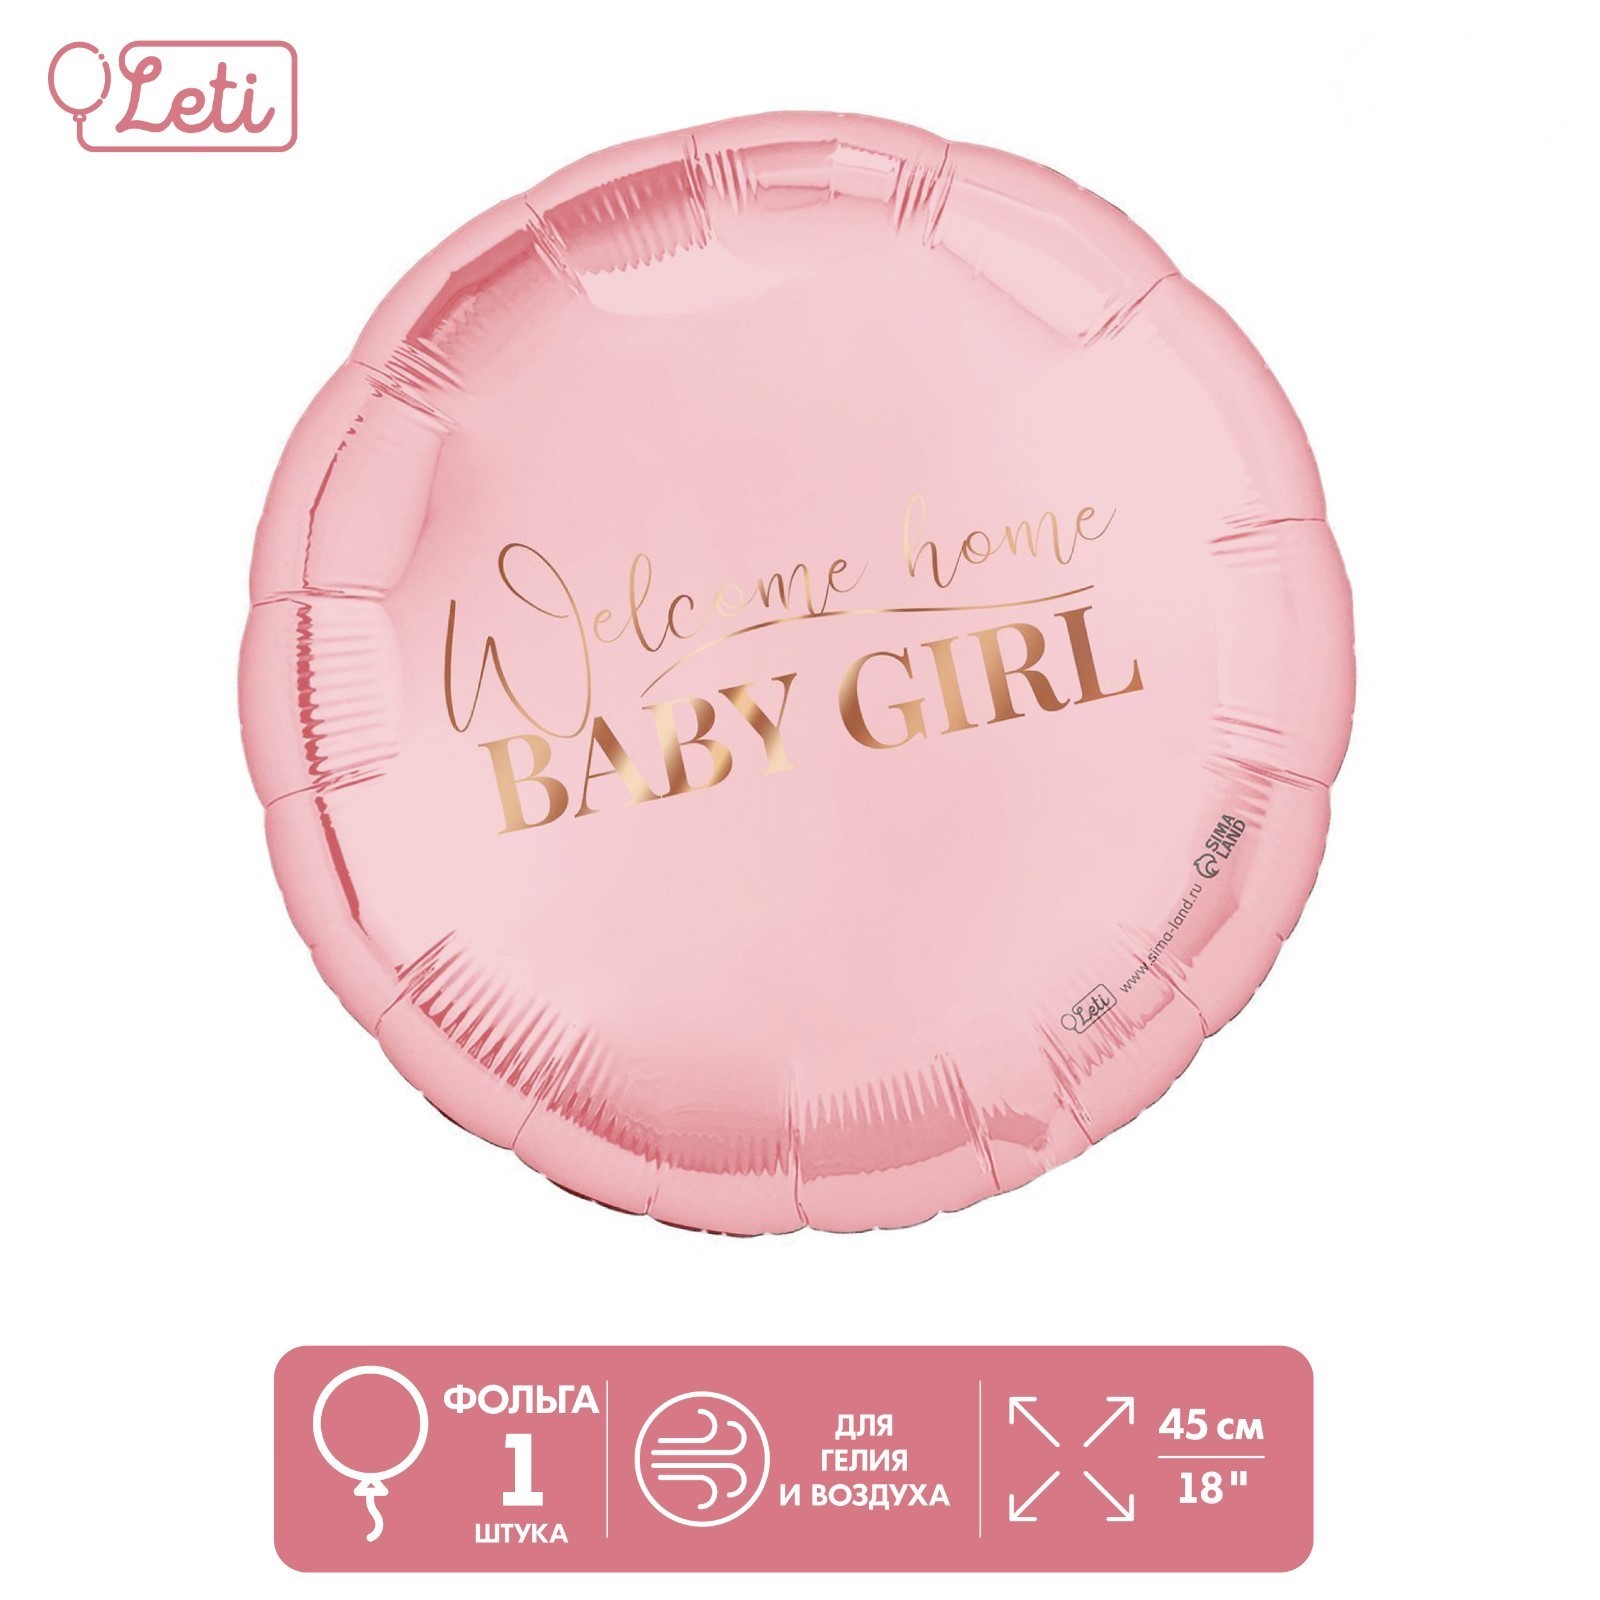 Шар фольгированный Leti Baby girl 9939363, диаметр 45 см, розовый